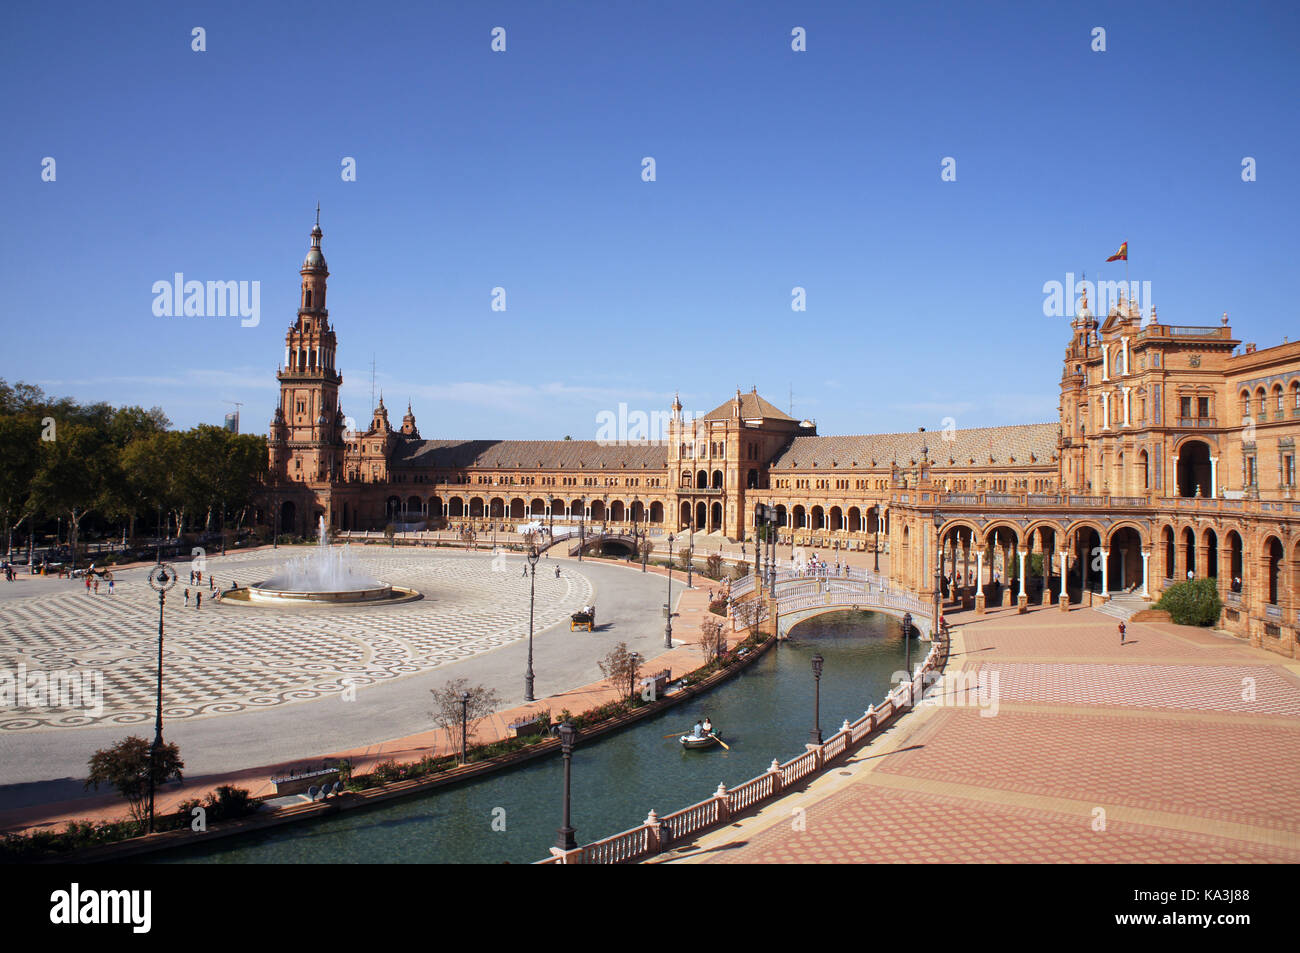 Plaza de España en Sevilla (España), España con puentes sobre el canal, torres y entrada principal al edificio. Ejemplo de morisco y Renacimiento re Foto de stock